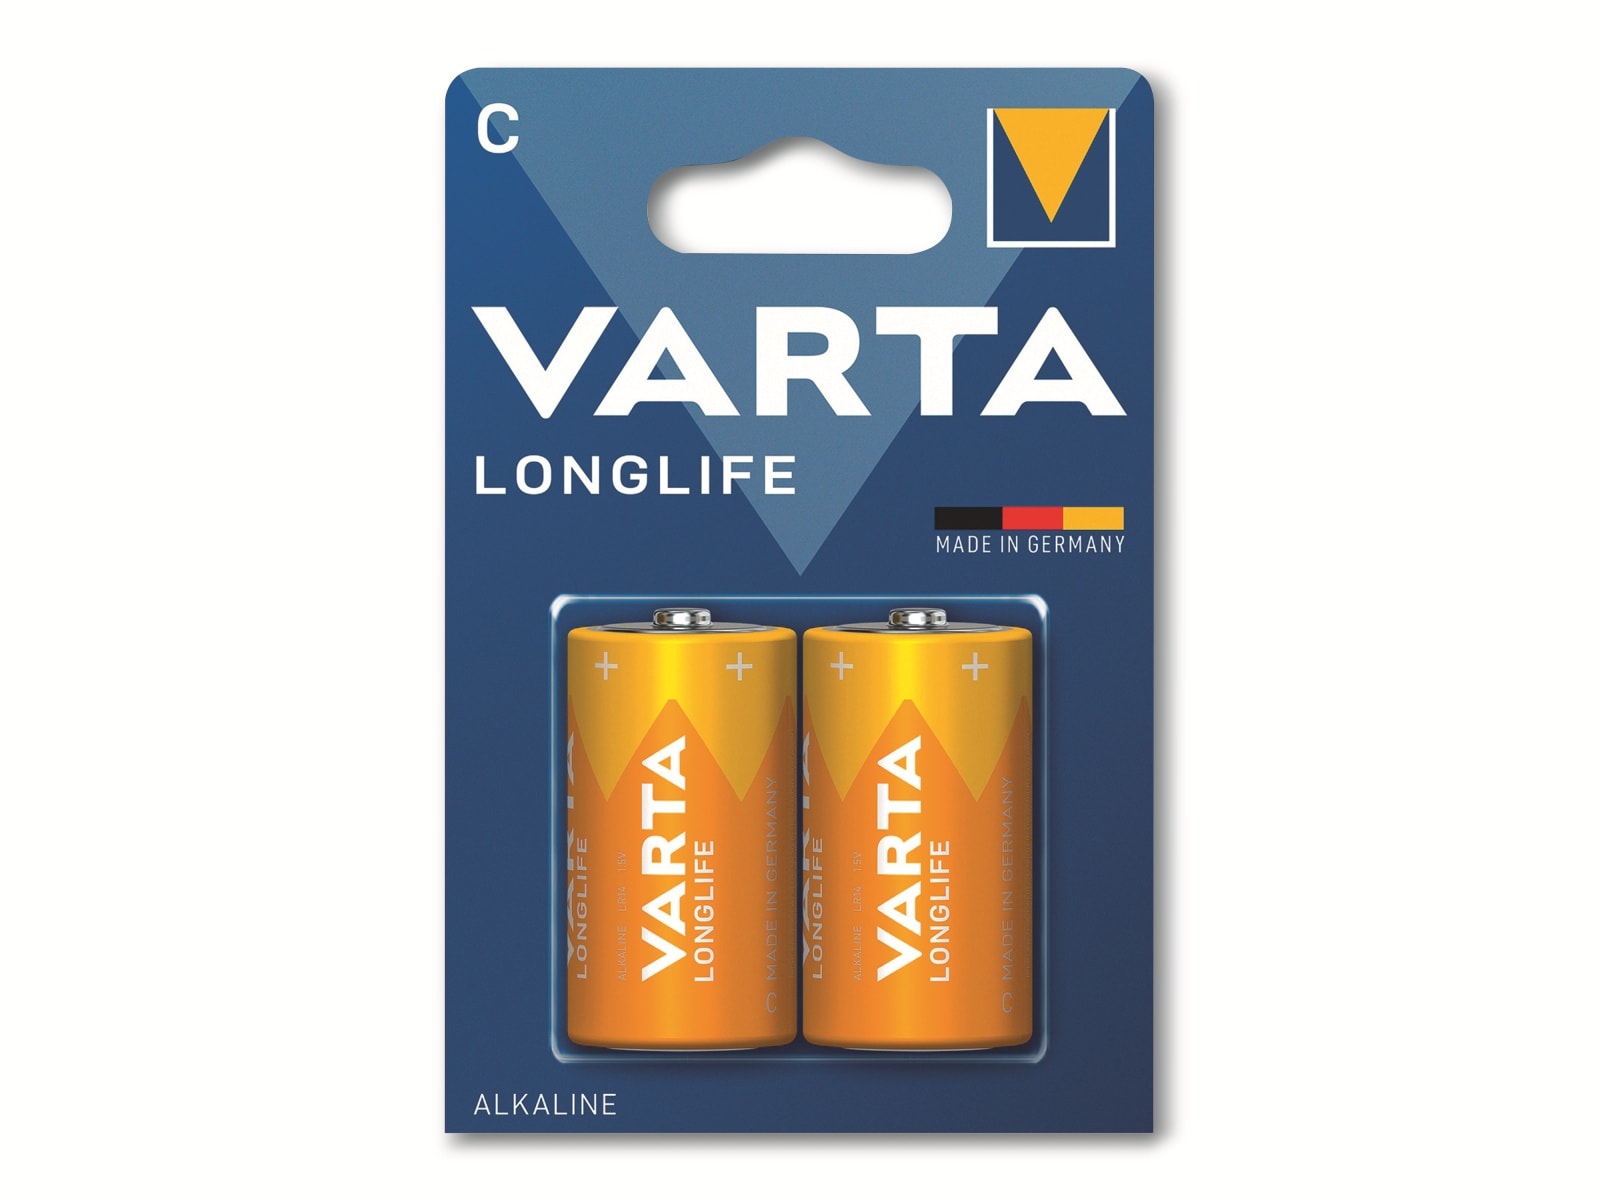 VARTA Batterie Alkaline, Baby, C, LR14, 1.5V, Longlife, 2 Stück